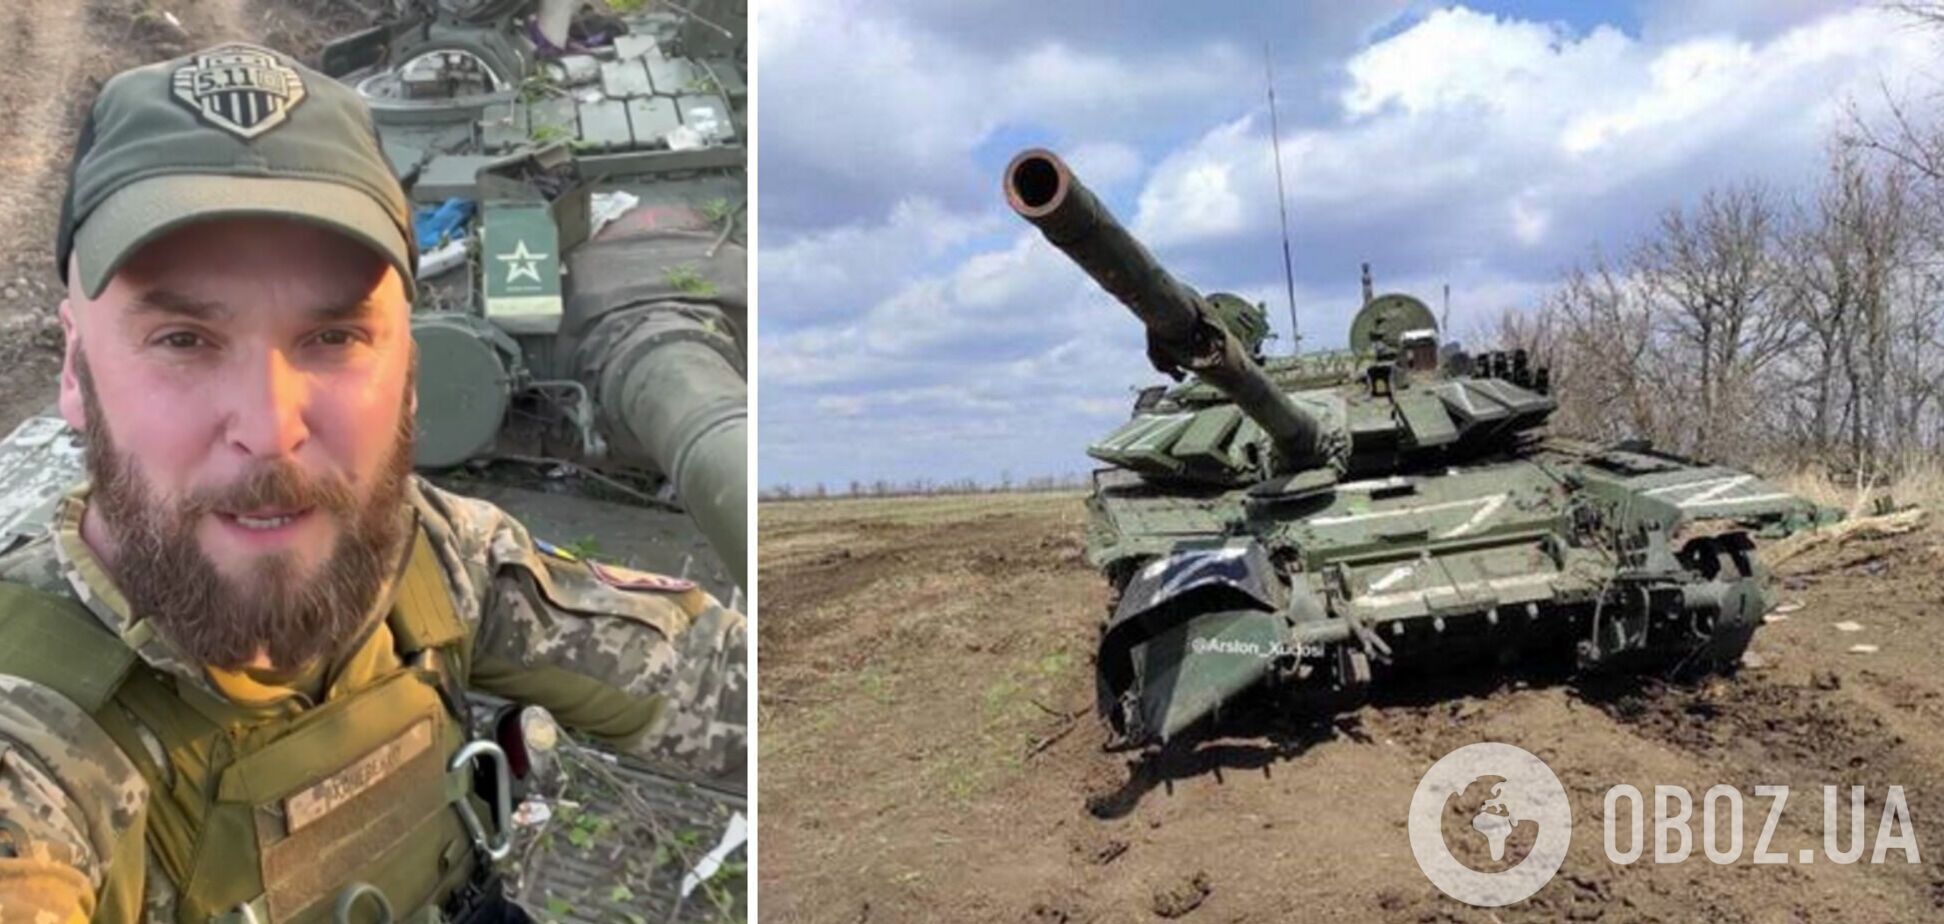 ВСУ на Донбассе захватили вражеский танк: будет бить российских оккупантов. Видео